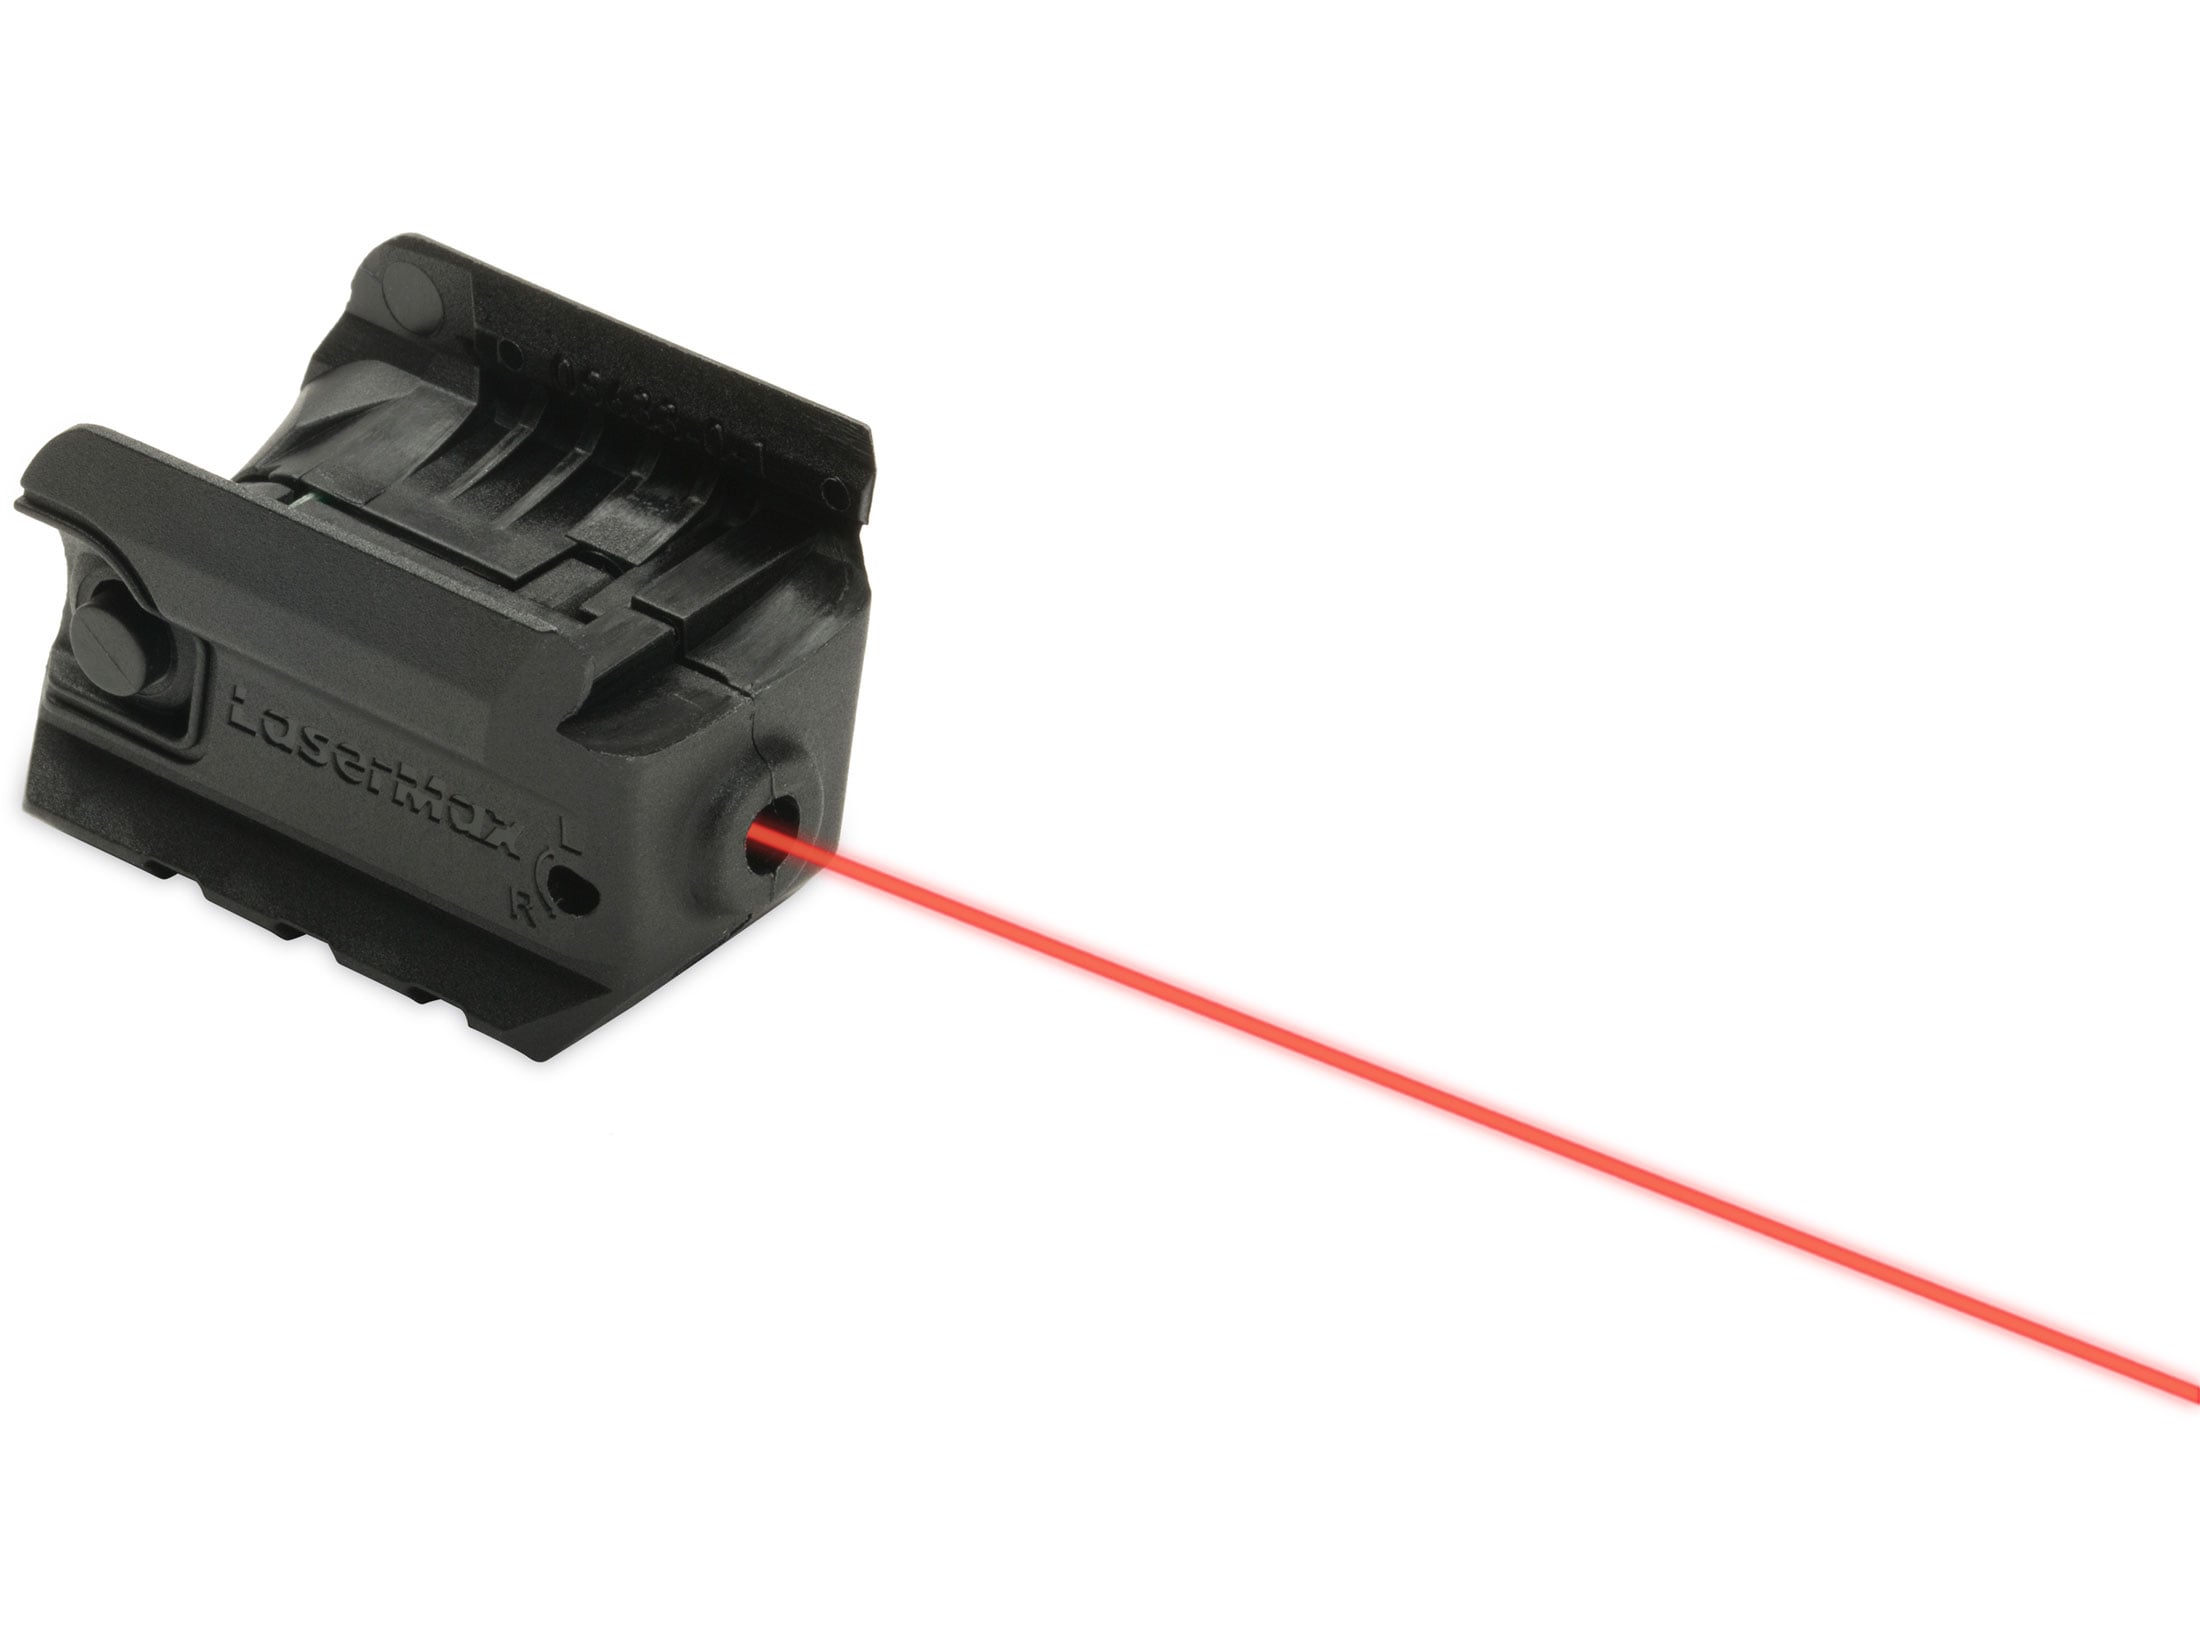 SR40c SR9c LMS-RMSR LaserMax Rail Mount Red Laser Sight for Ruger SR22 